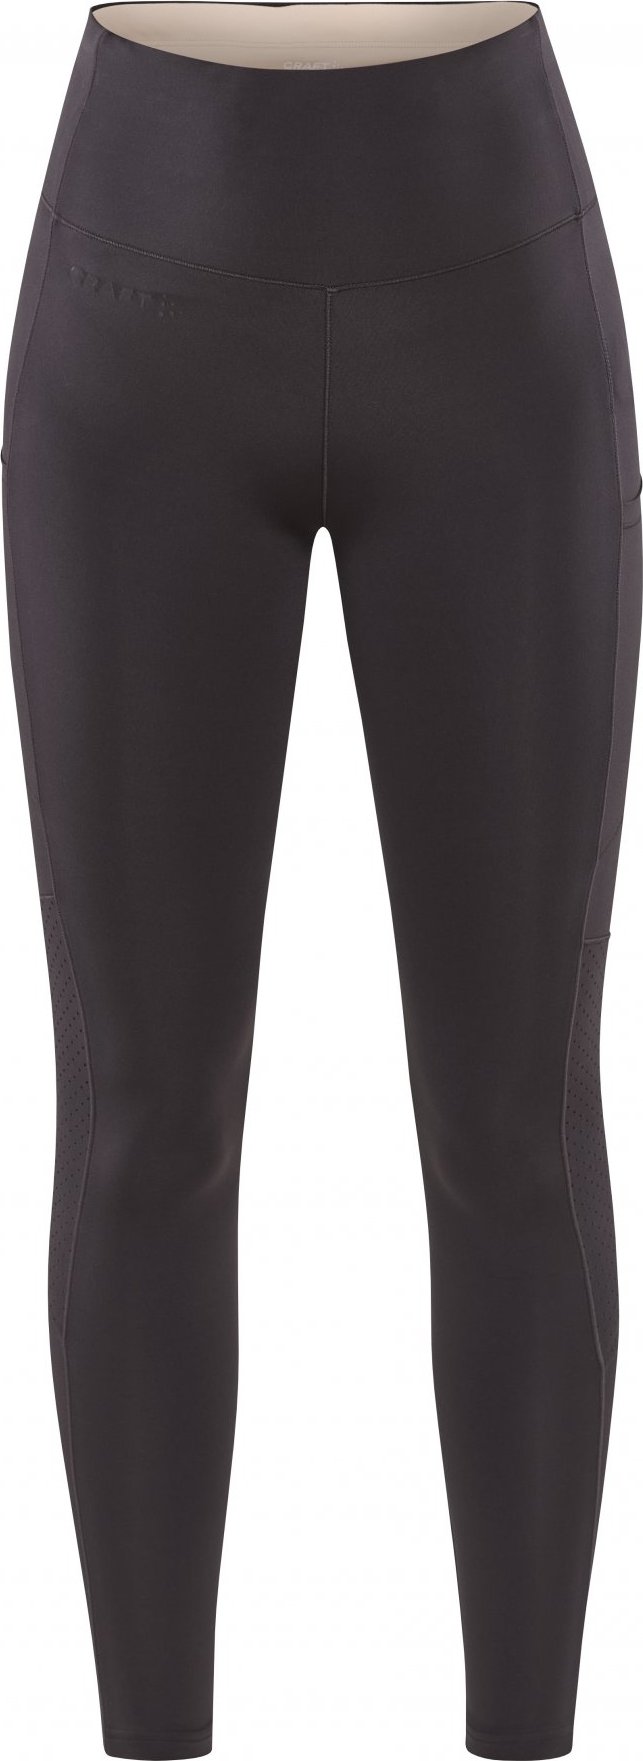 Dámské elastické kalhoty CRAFT Adv Essence 2 šedé Velikost: XL